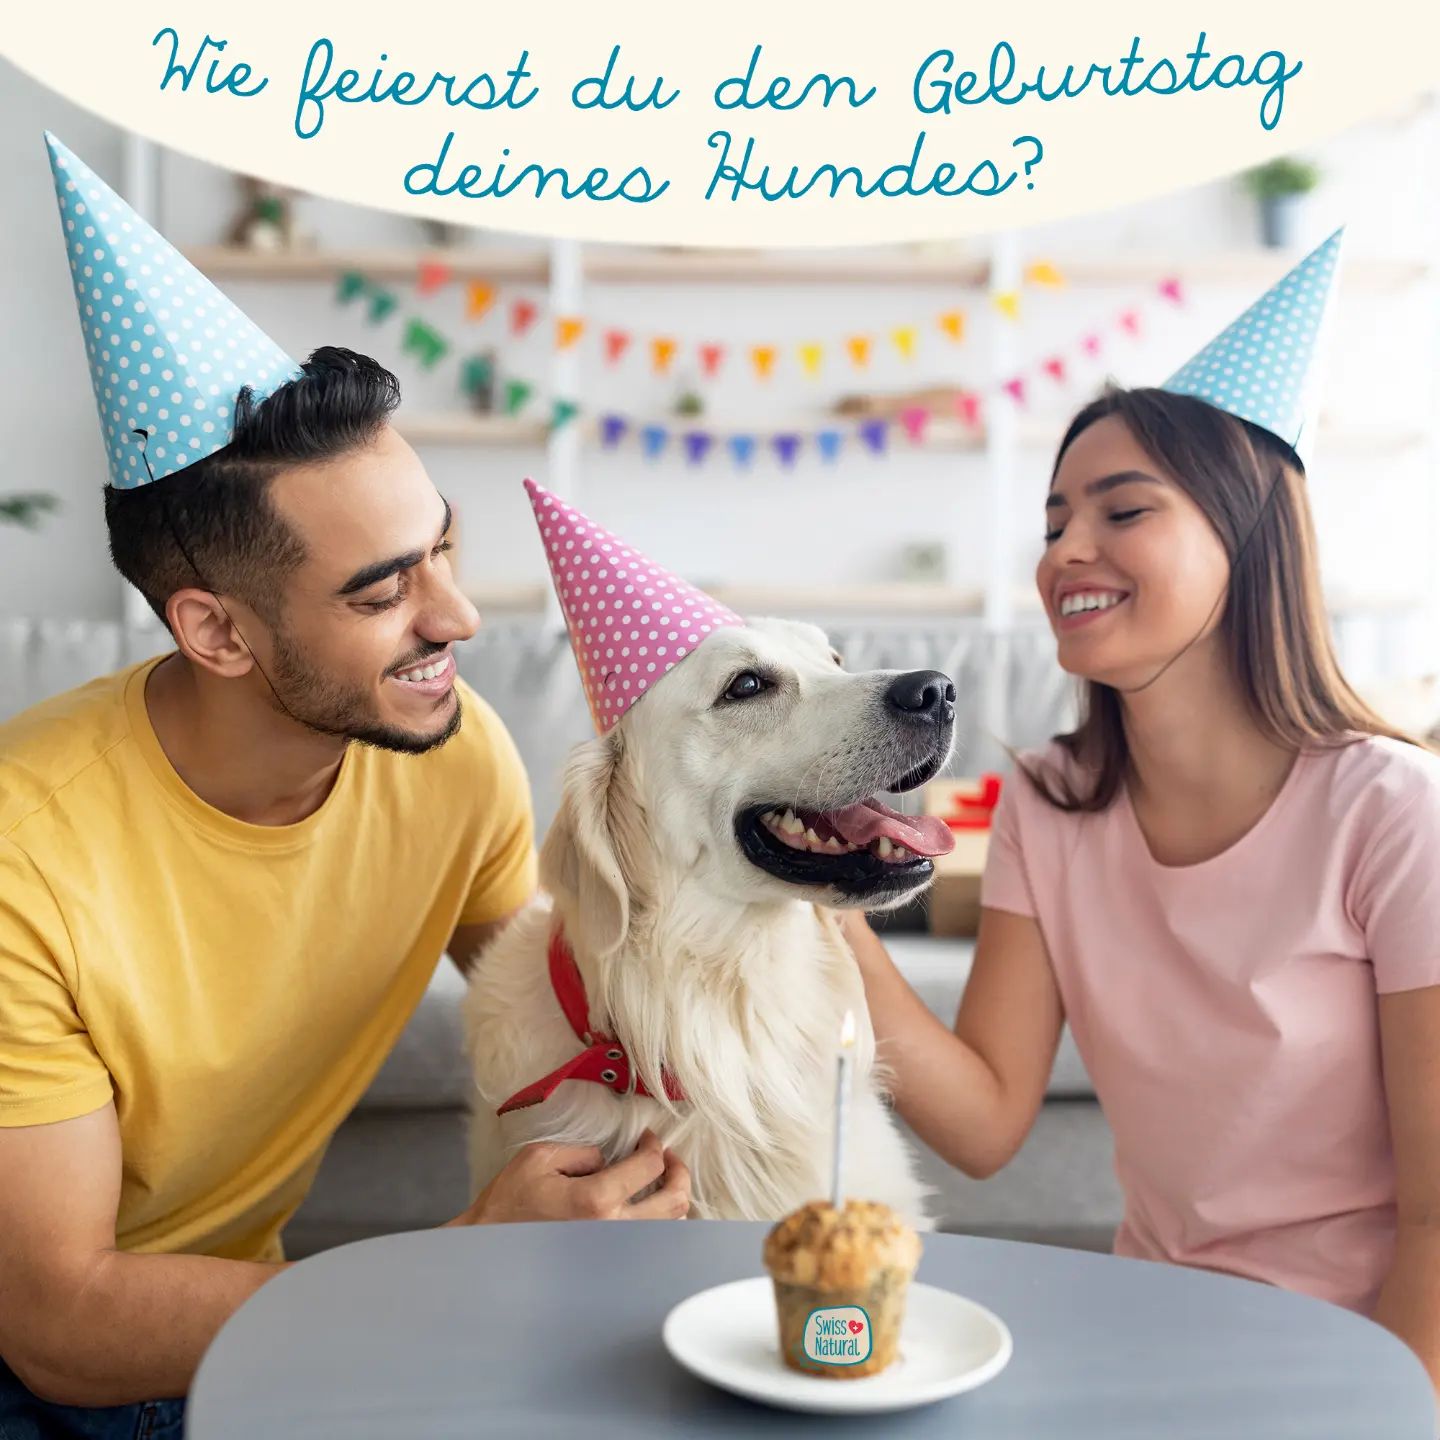 🎂Wie feierst du den Geburtstag deines Hundes?🎂

Selbstgebackener Kuchen? Hundefreunde einladen? Ein neues Halsband oder Spielzeug? Unsere Hunde sind zu unseren besten Freunden geworden, da ist es nicht unüblich, auch den Geburtstag unseres 4-Beiners zu feiern. 

Was haltet ihr davon?

In unserem Blogbeitrag haben wir leckere Rezepte für selbstgemachte Hundeguetzli - findet ihr alles auf unserer Webseite 😁

.
.
.
.
.

#swissnatural #swissnaturalbyallfarm #swissdogfood #swissmade #swiss #swissquality🇨🇭 #schweizerhundefutter #schweizerfleisch #schweizerherkunft #schweizerunternehmen #schweizerqualität #semimoist #softfutter #softeshundefutter #hundefutterausderschweiz #hundefutter #hundegeburtstag #hundegeburtstagskuchen #feiernmithund